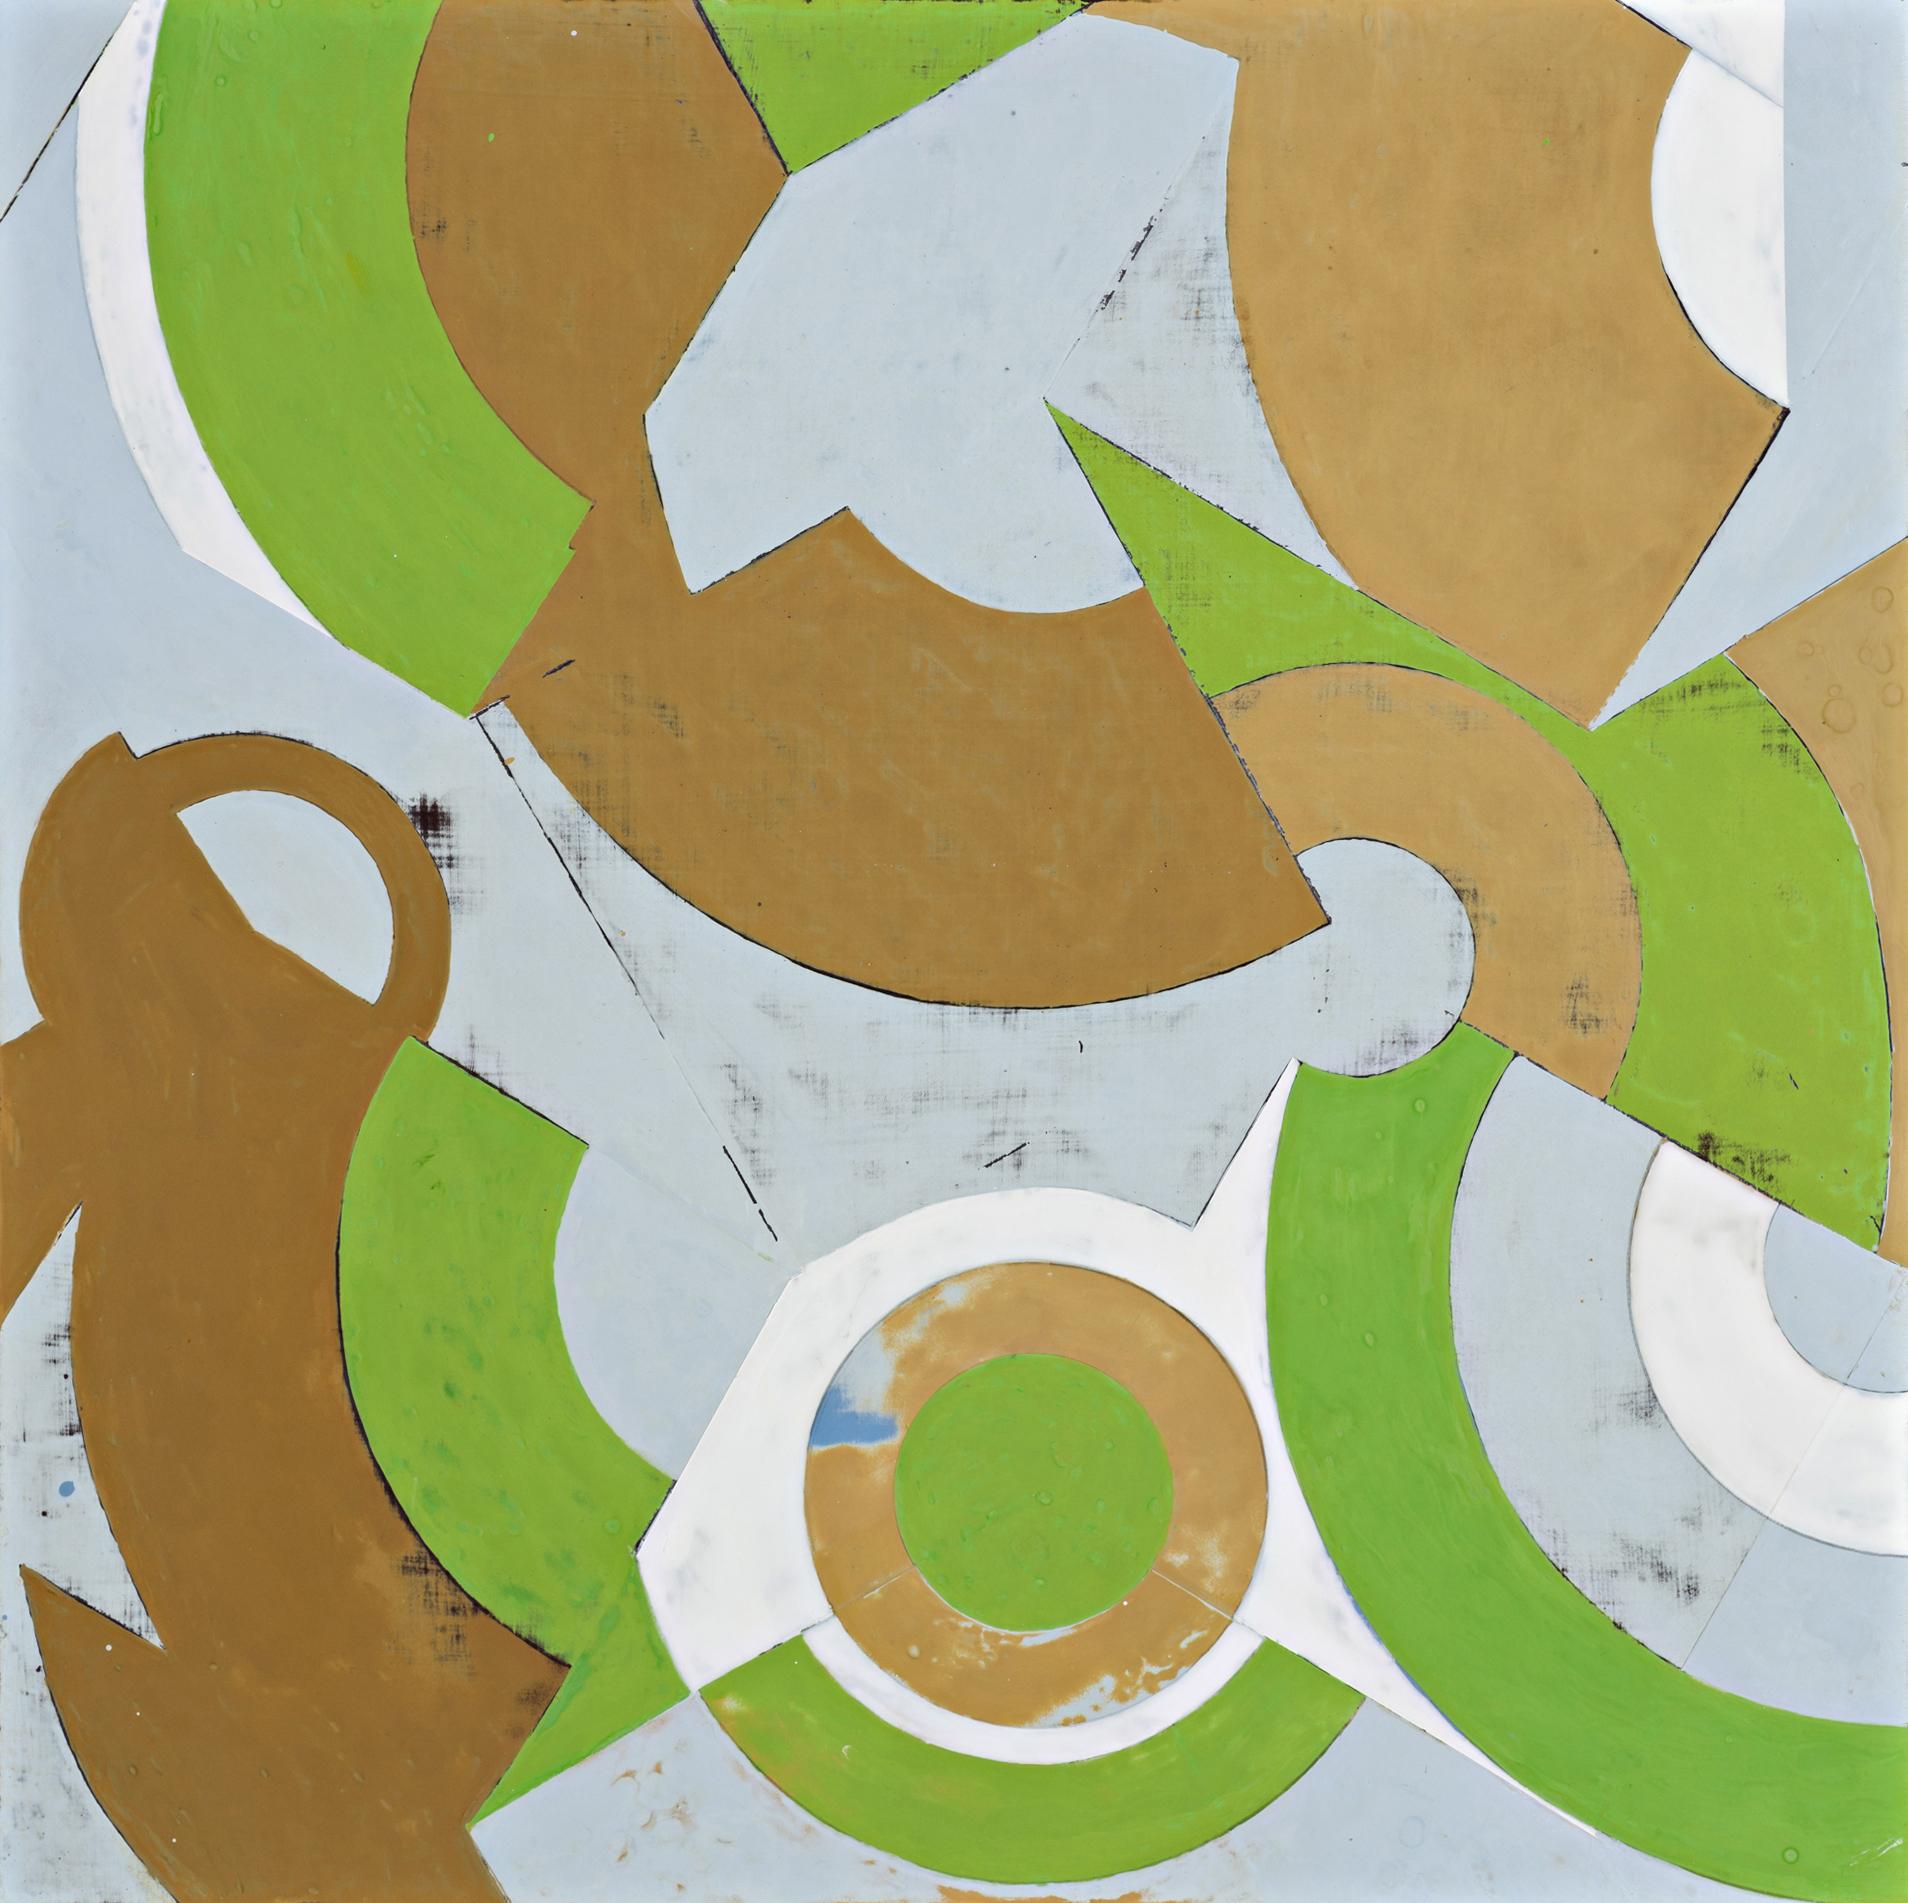 Plan du printemps n° 2 (peinture abstraite géométrique en vert, beige et bleu clair)